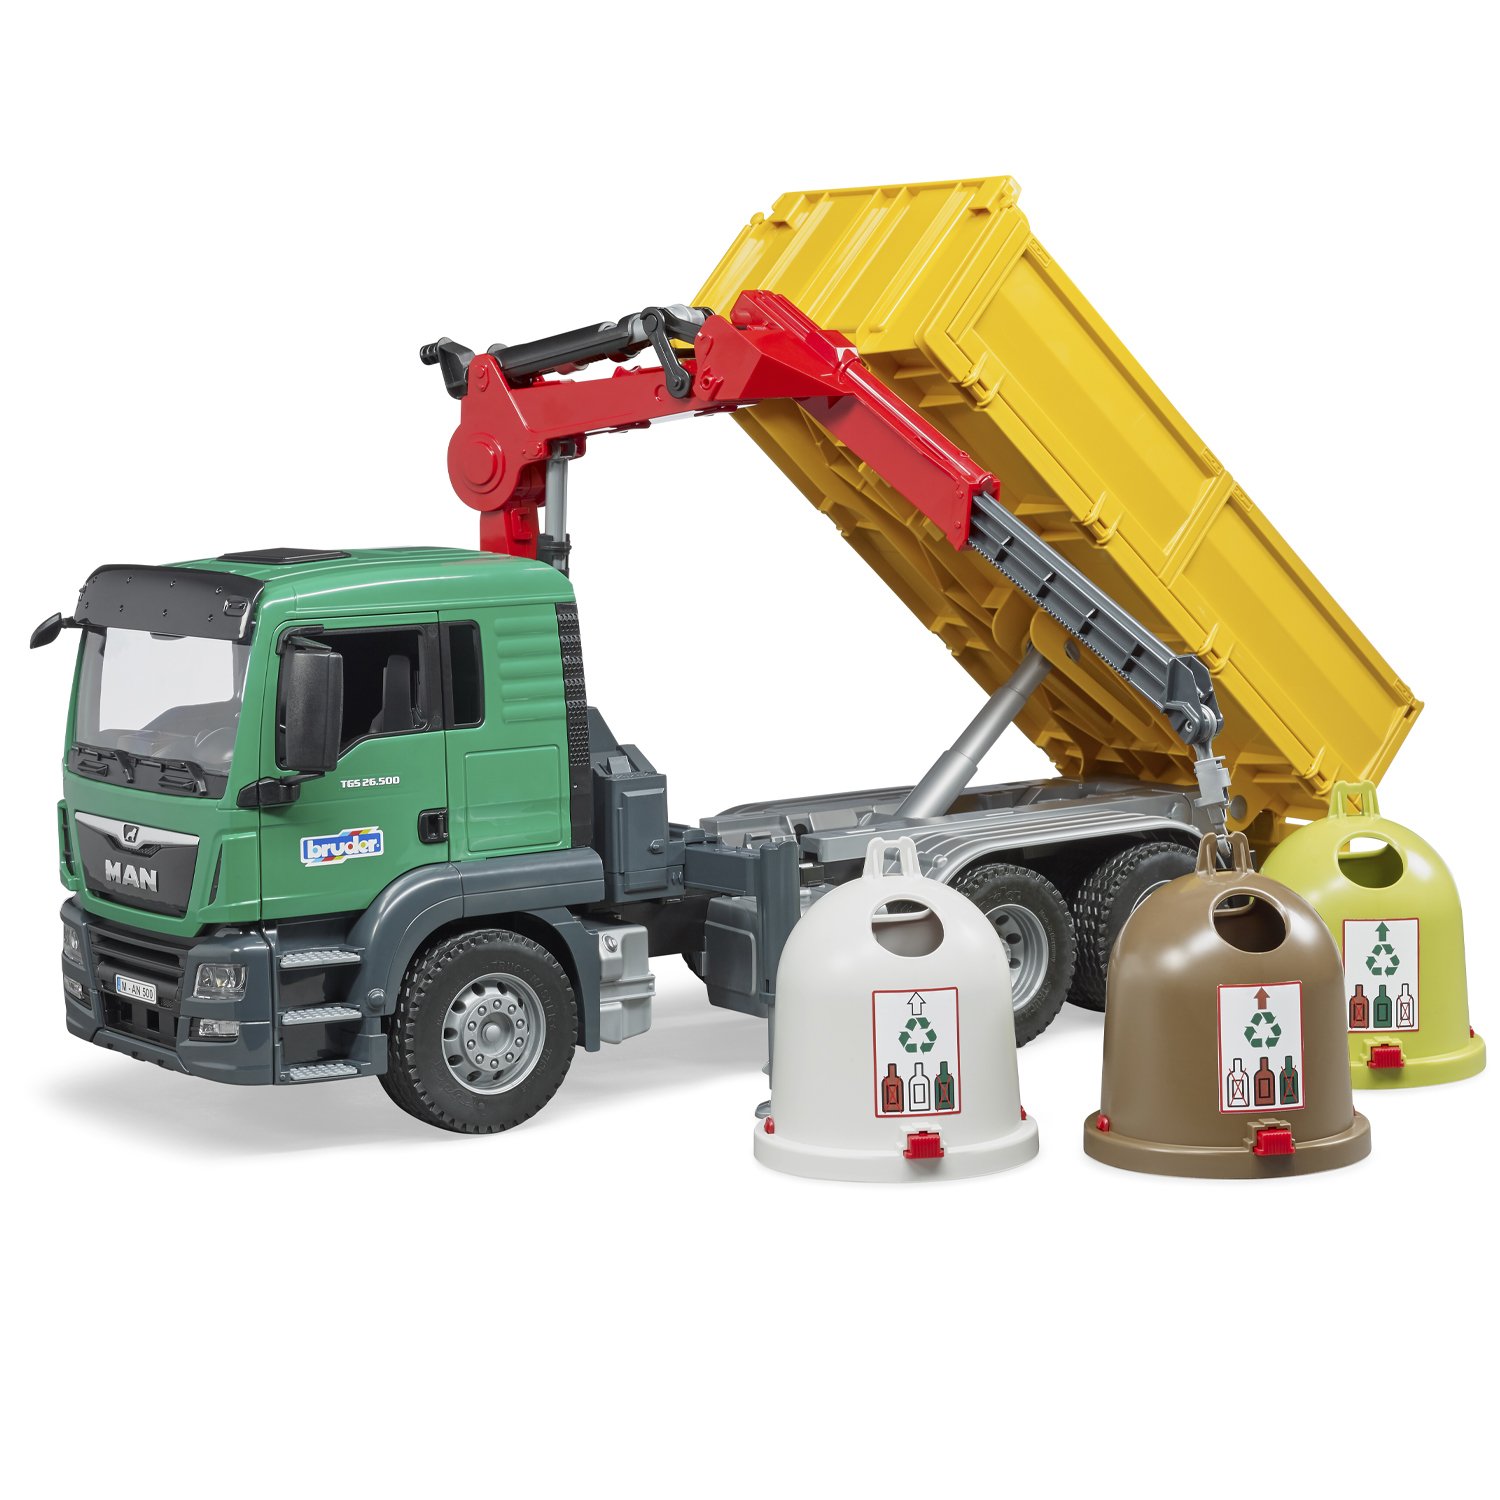 Уборочный грузовик Bruder Man с 3 мусорными контейнерами (03-753) 1:16